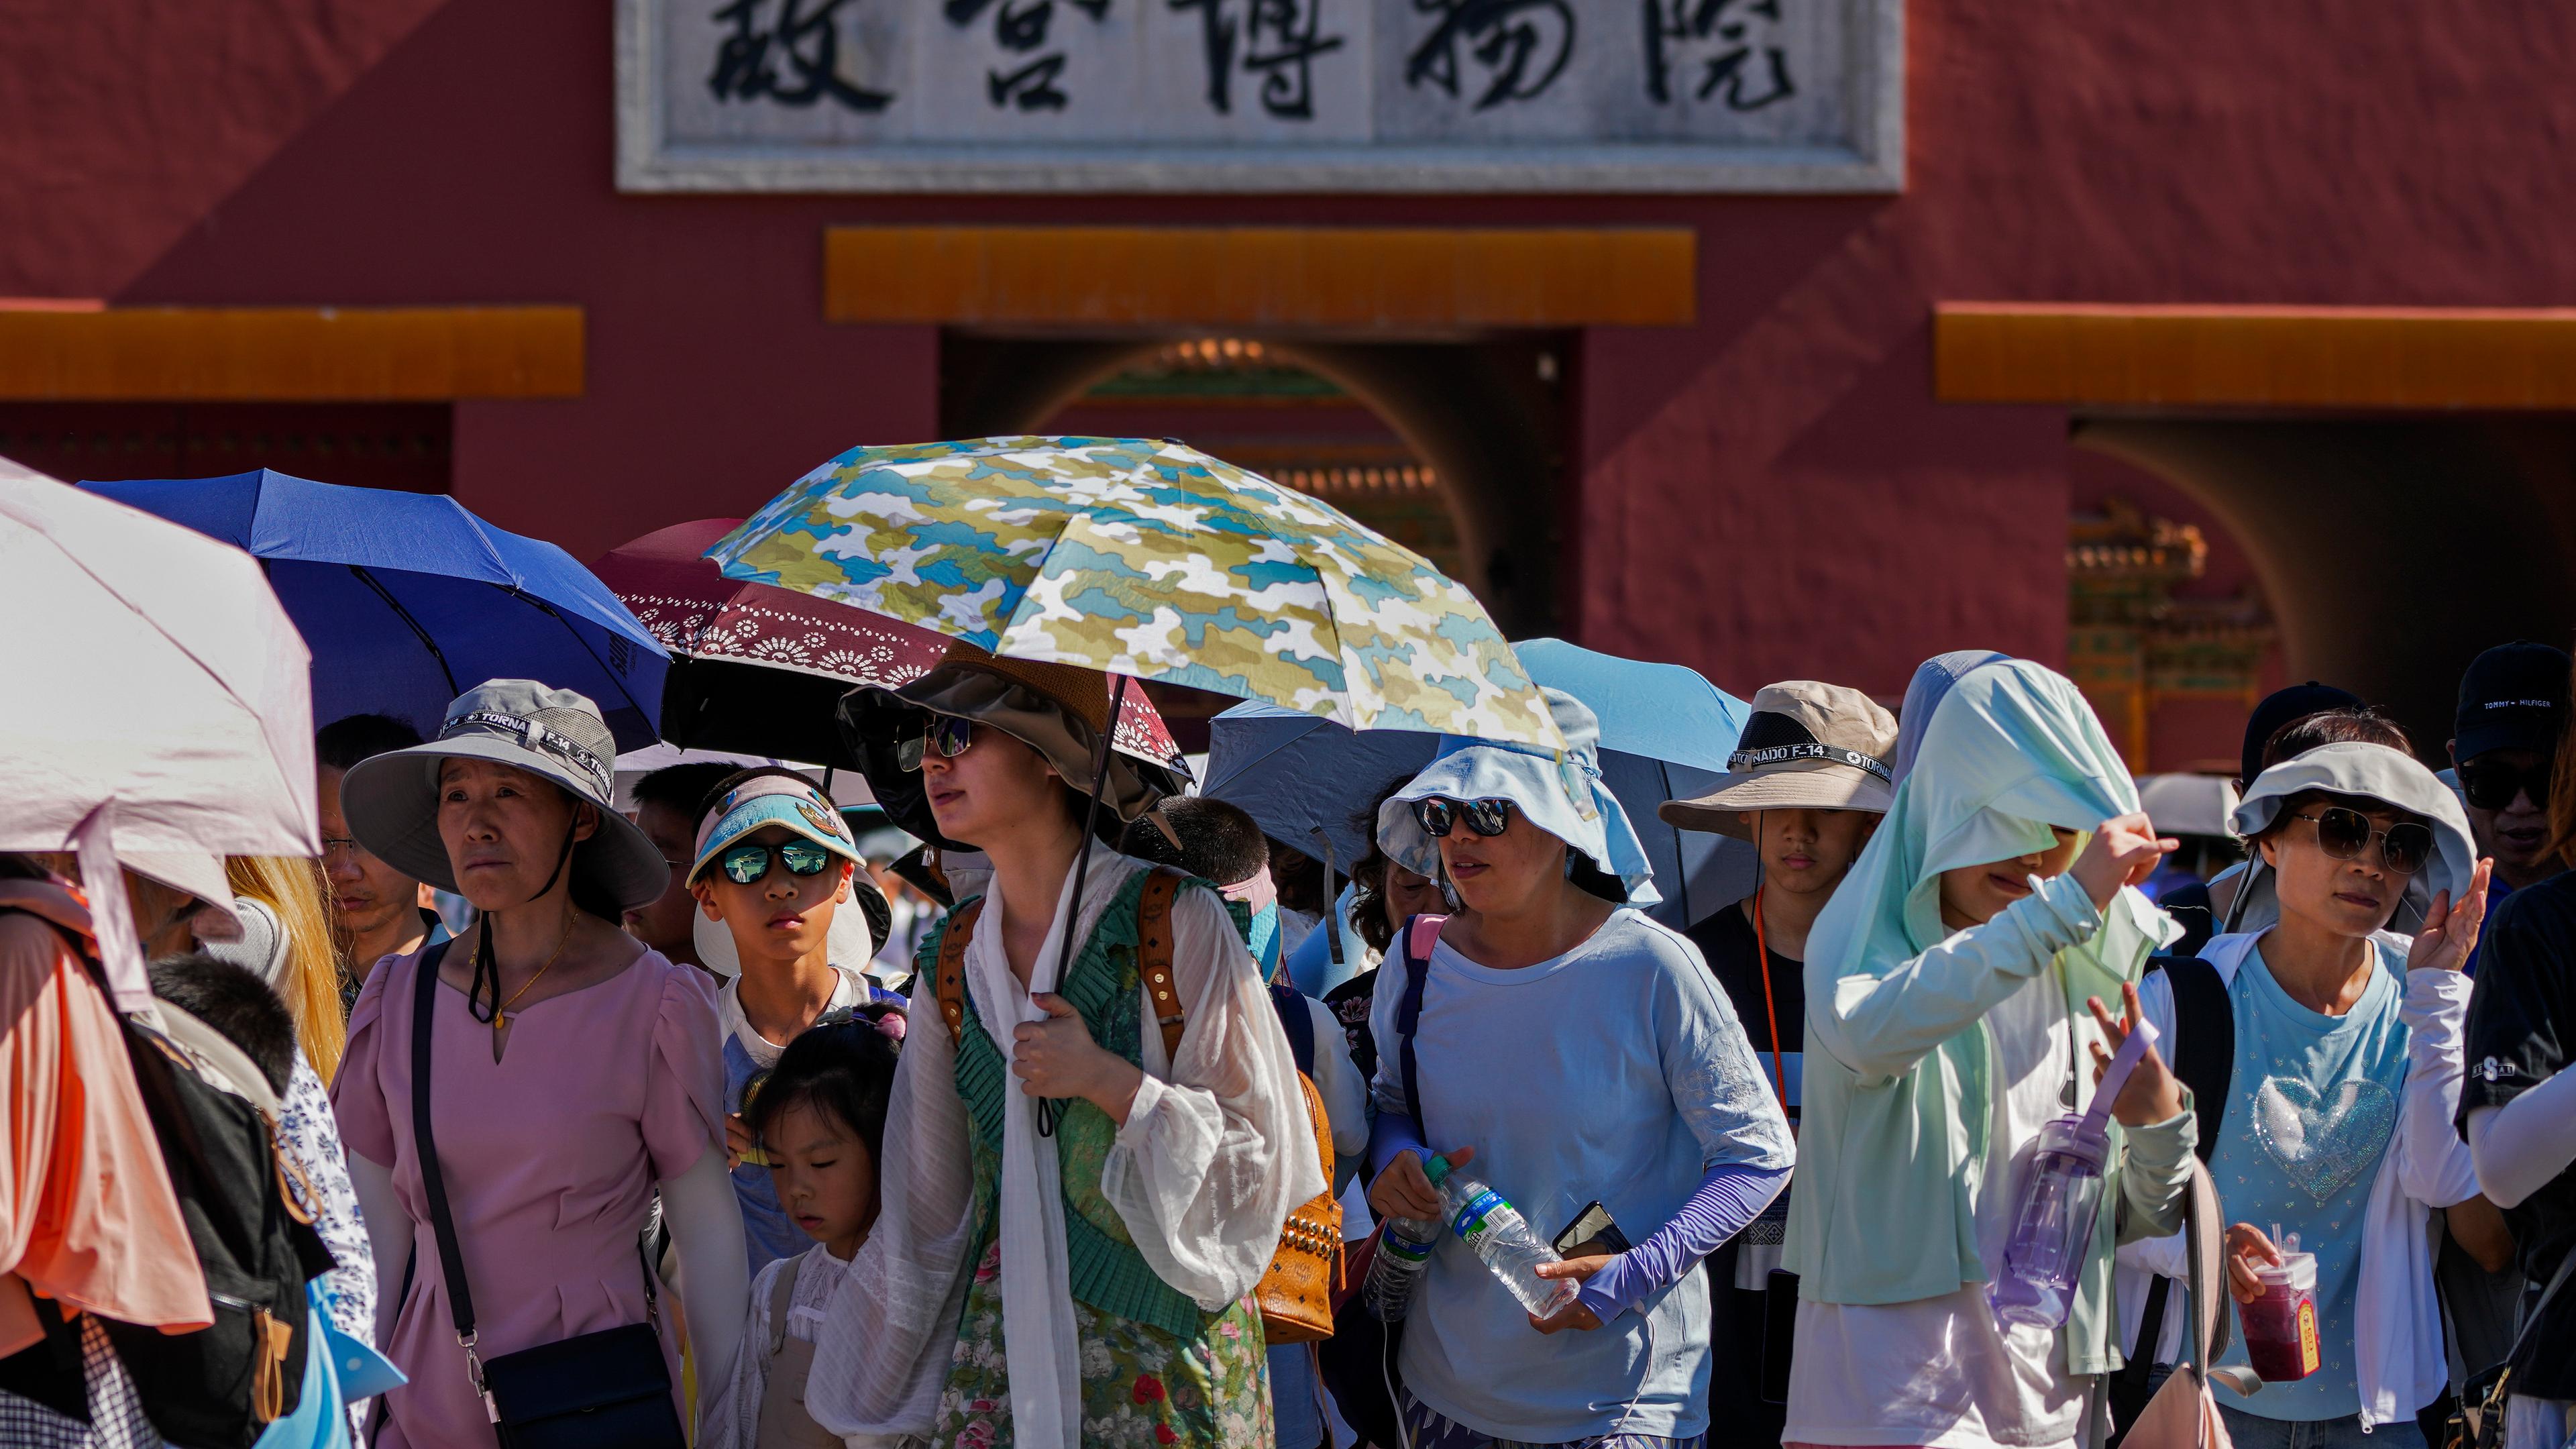 Zu sehen sind Menschen in Peking, die sich mit Schirmen und Hüten vor der Hitze schützen.